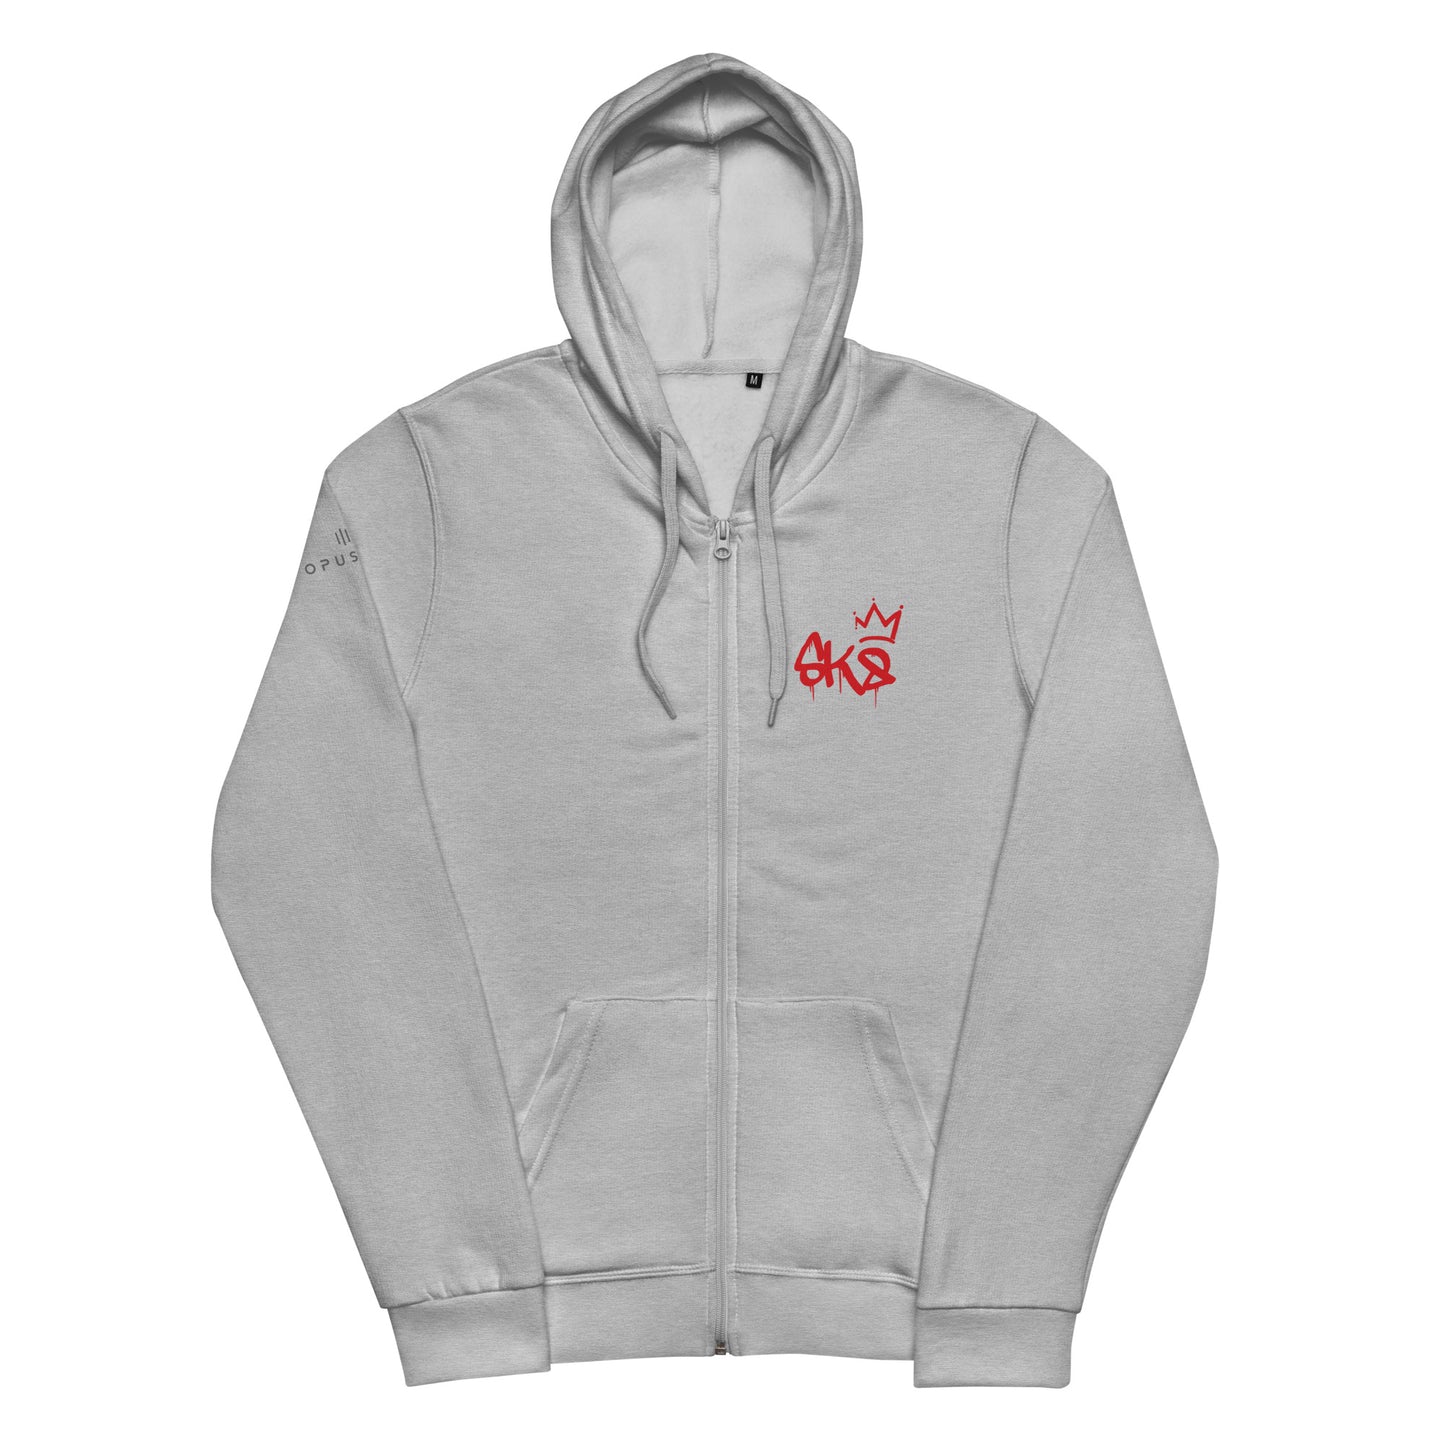 SK8 (v1) Unisex zip hoodie